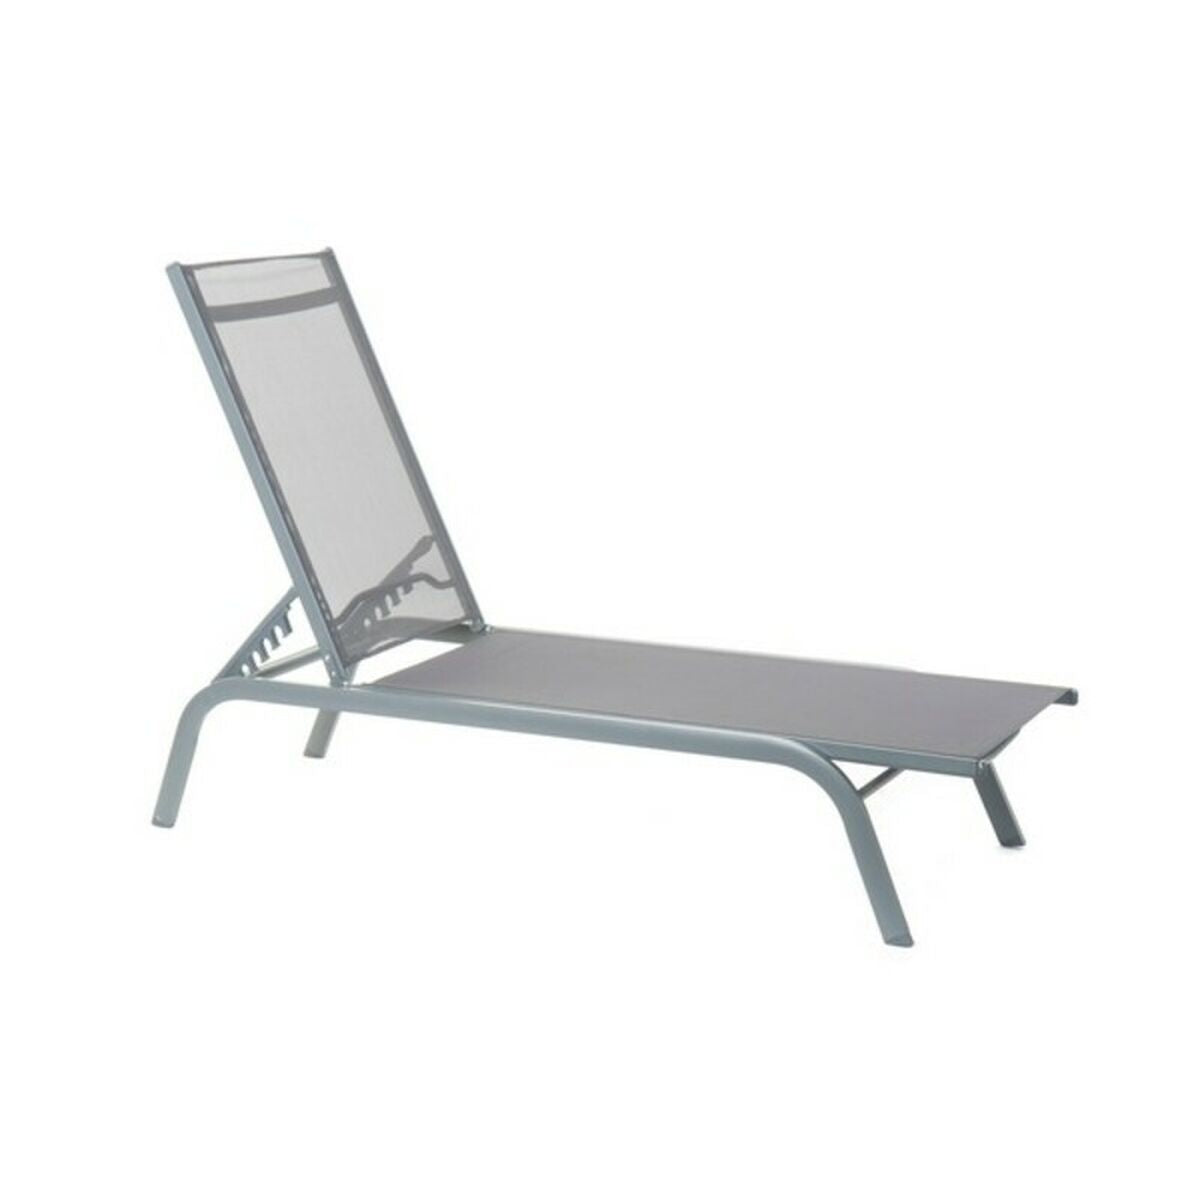 Chaise longue Inclinable Gris Foncé Home Decor PVC Aluminium (191 x 58 x 98 cm)